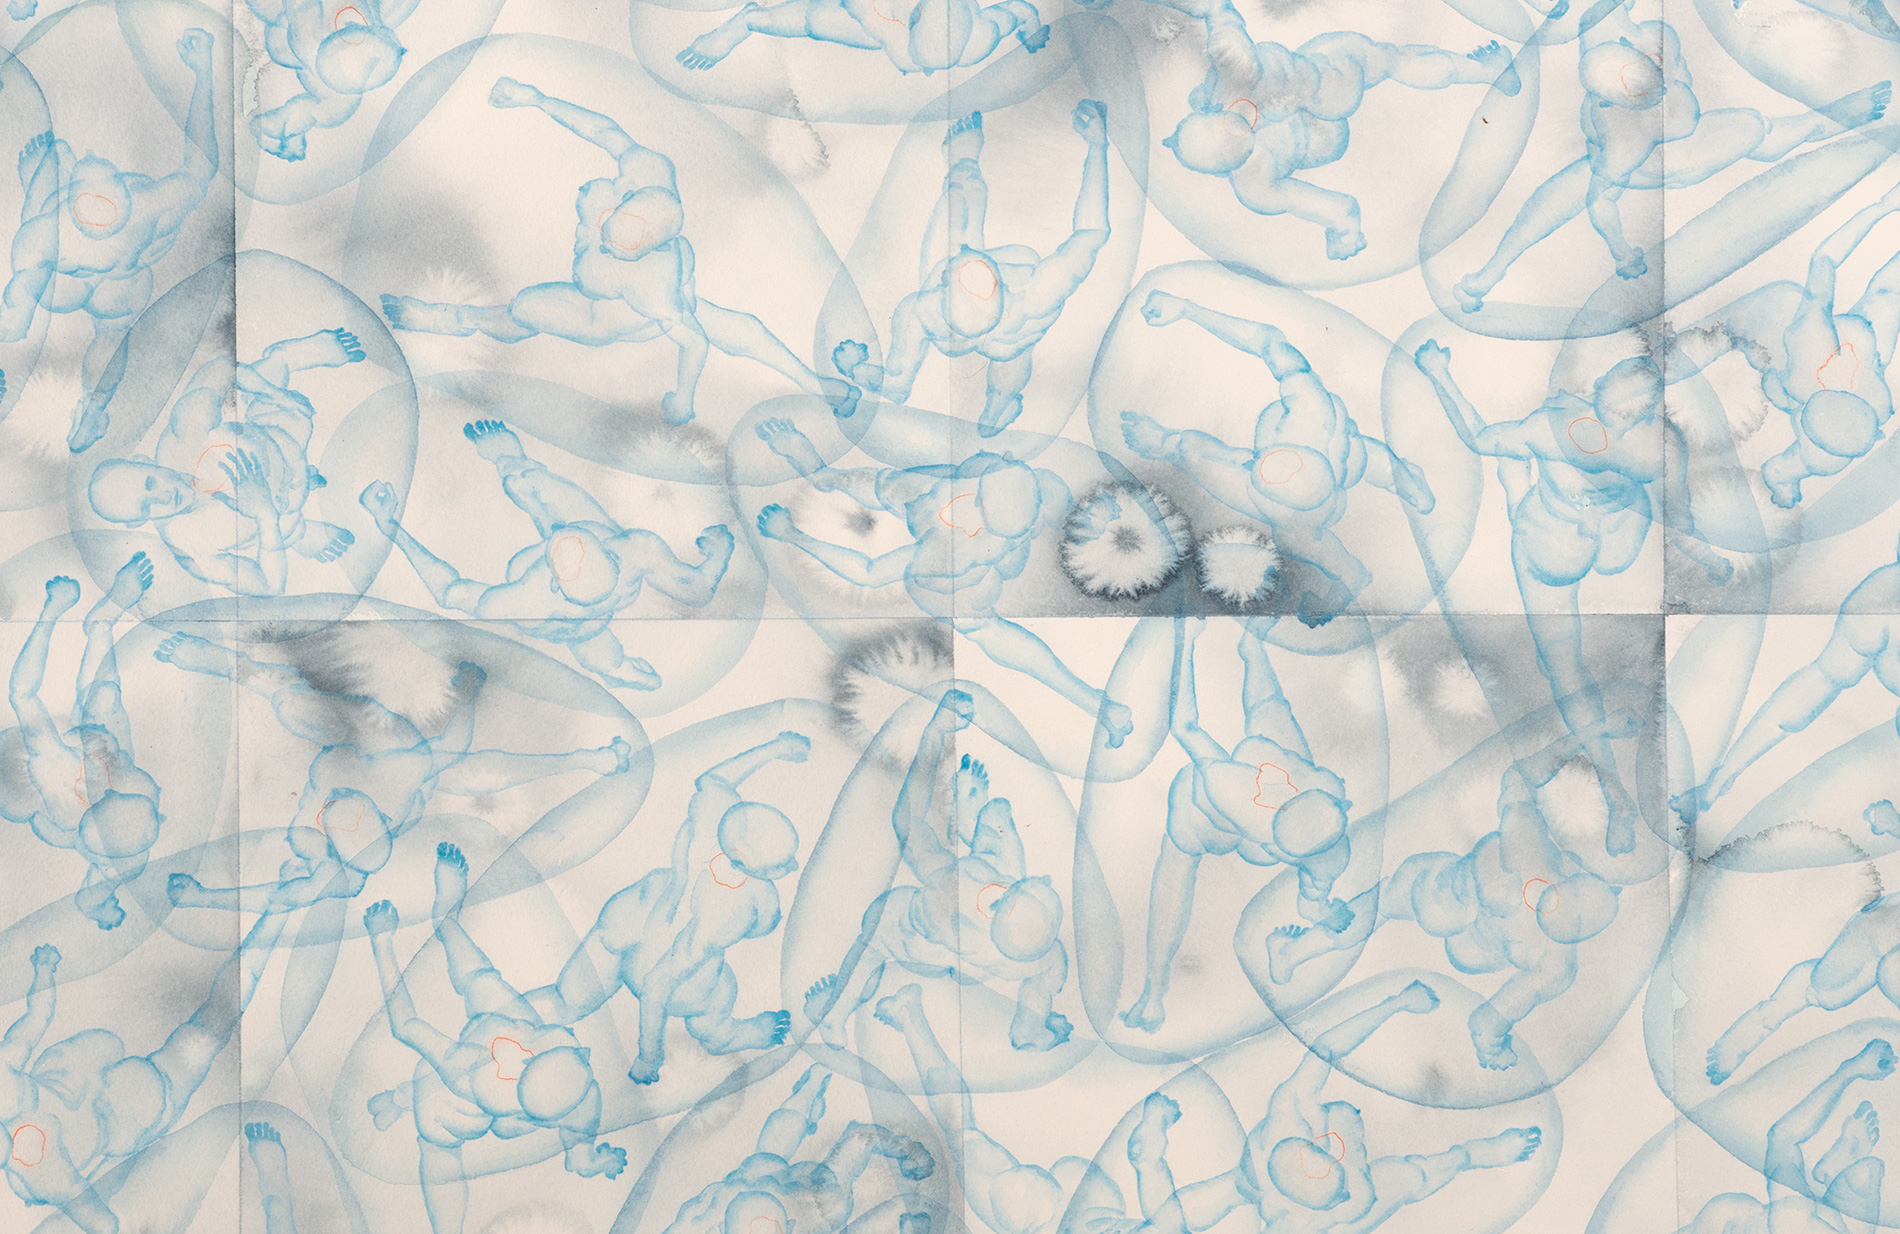 Stefano Bonzano, Reazioni biologiche, acquerello su carta applicato su due pannelli, 110x73 cm, 2019 (dettaglio).